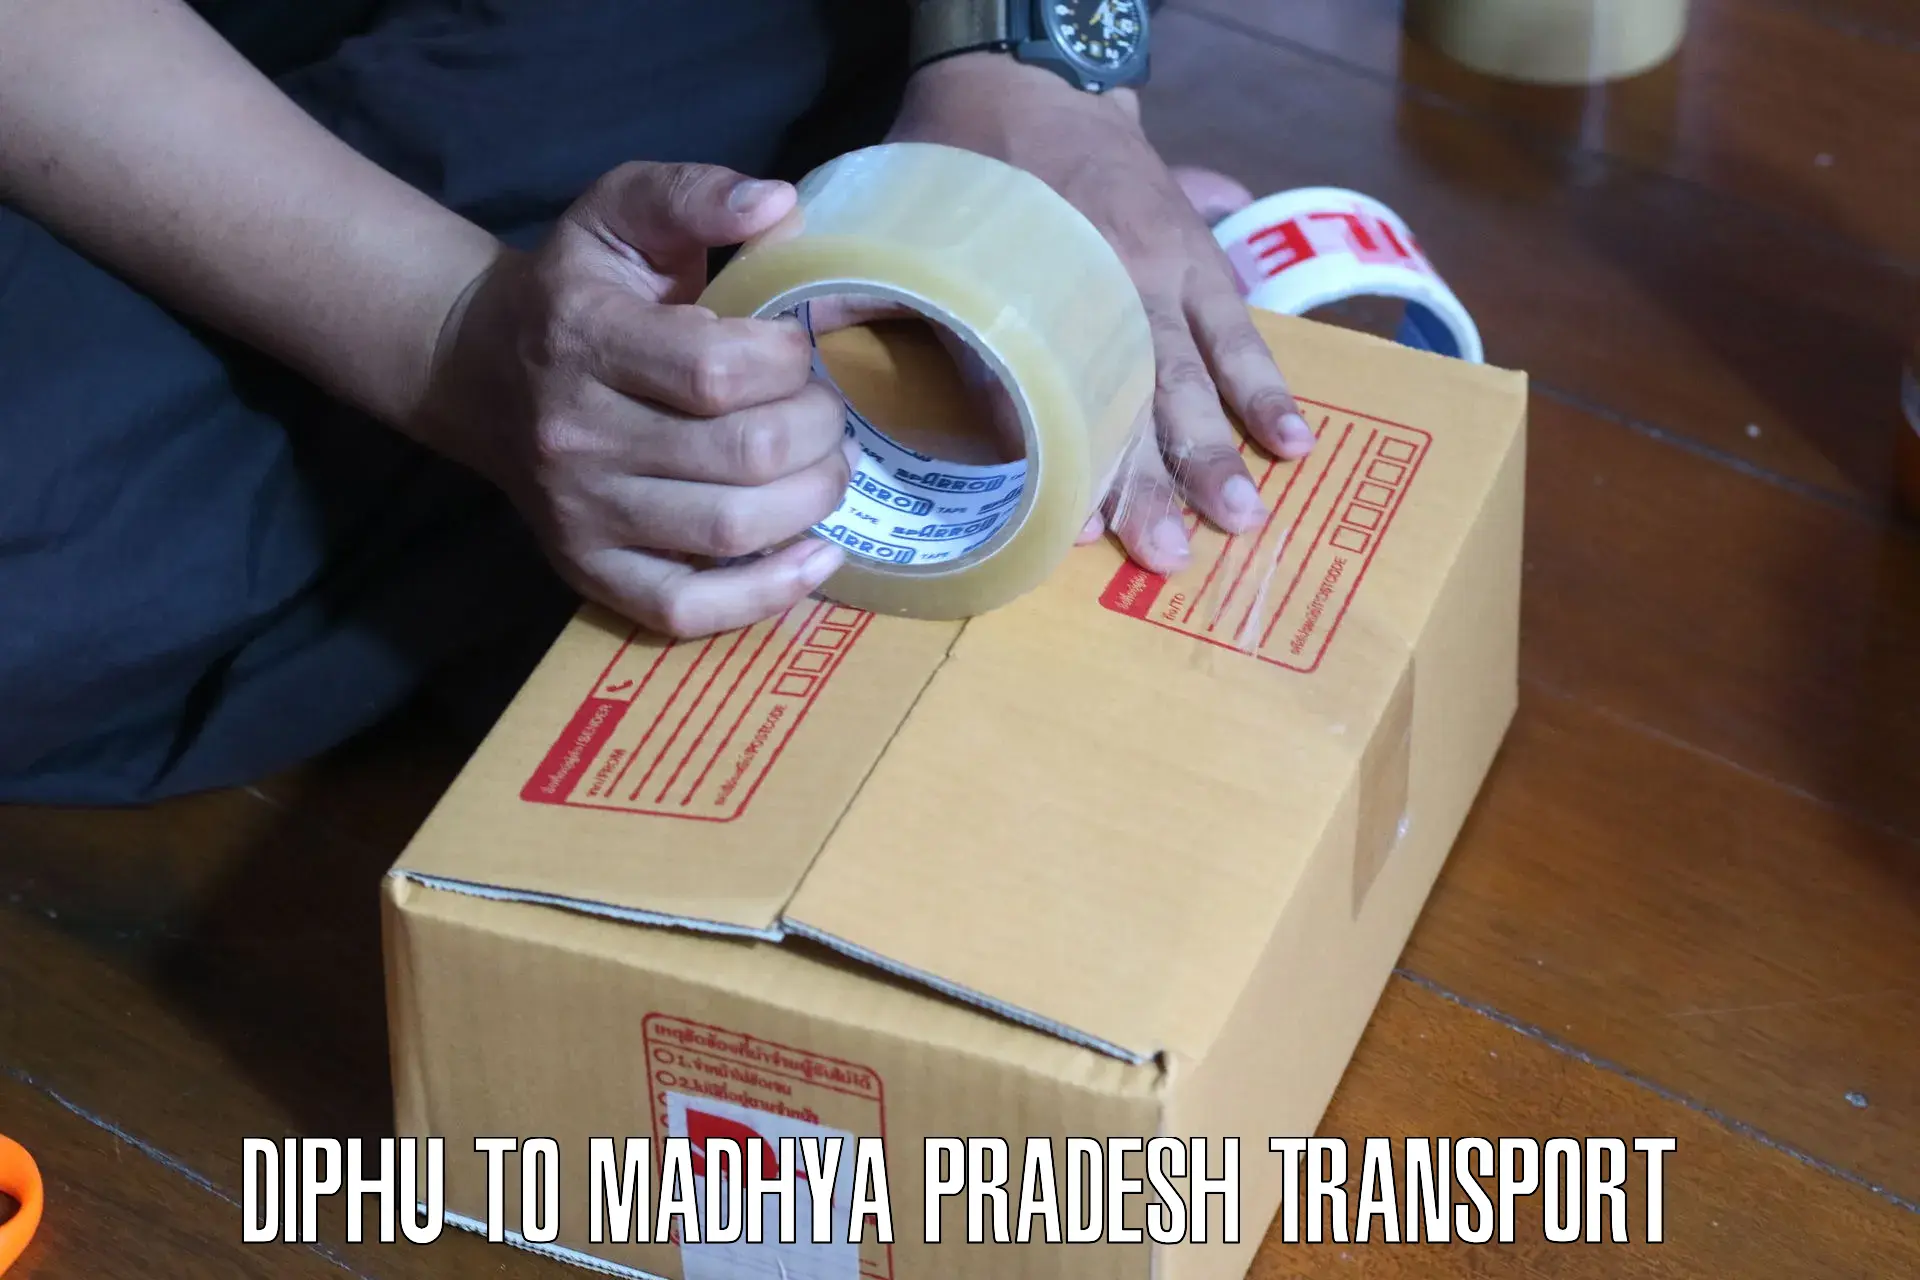 Road transport online services Diphu to Nalkheda